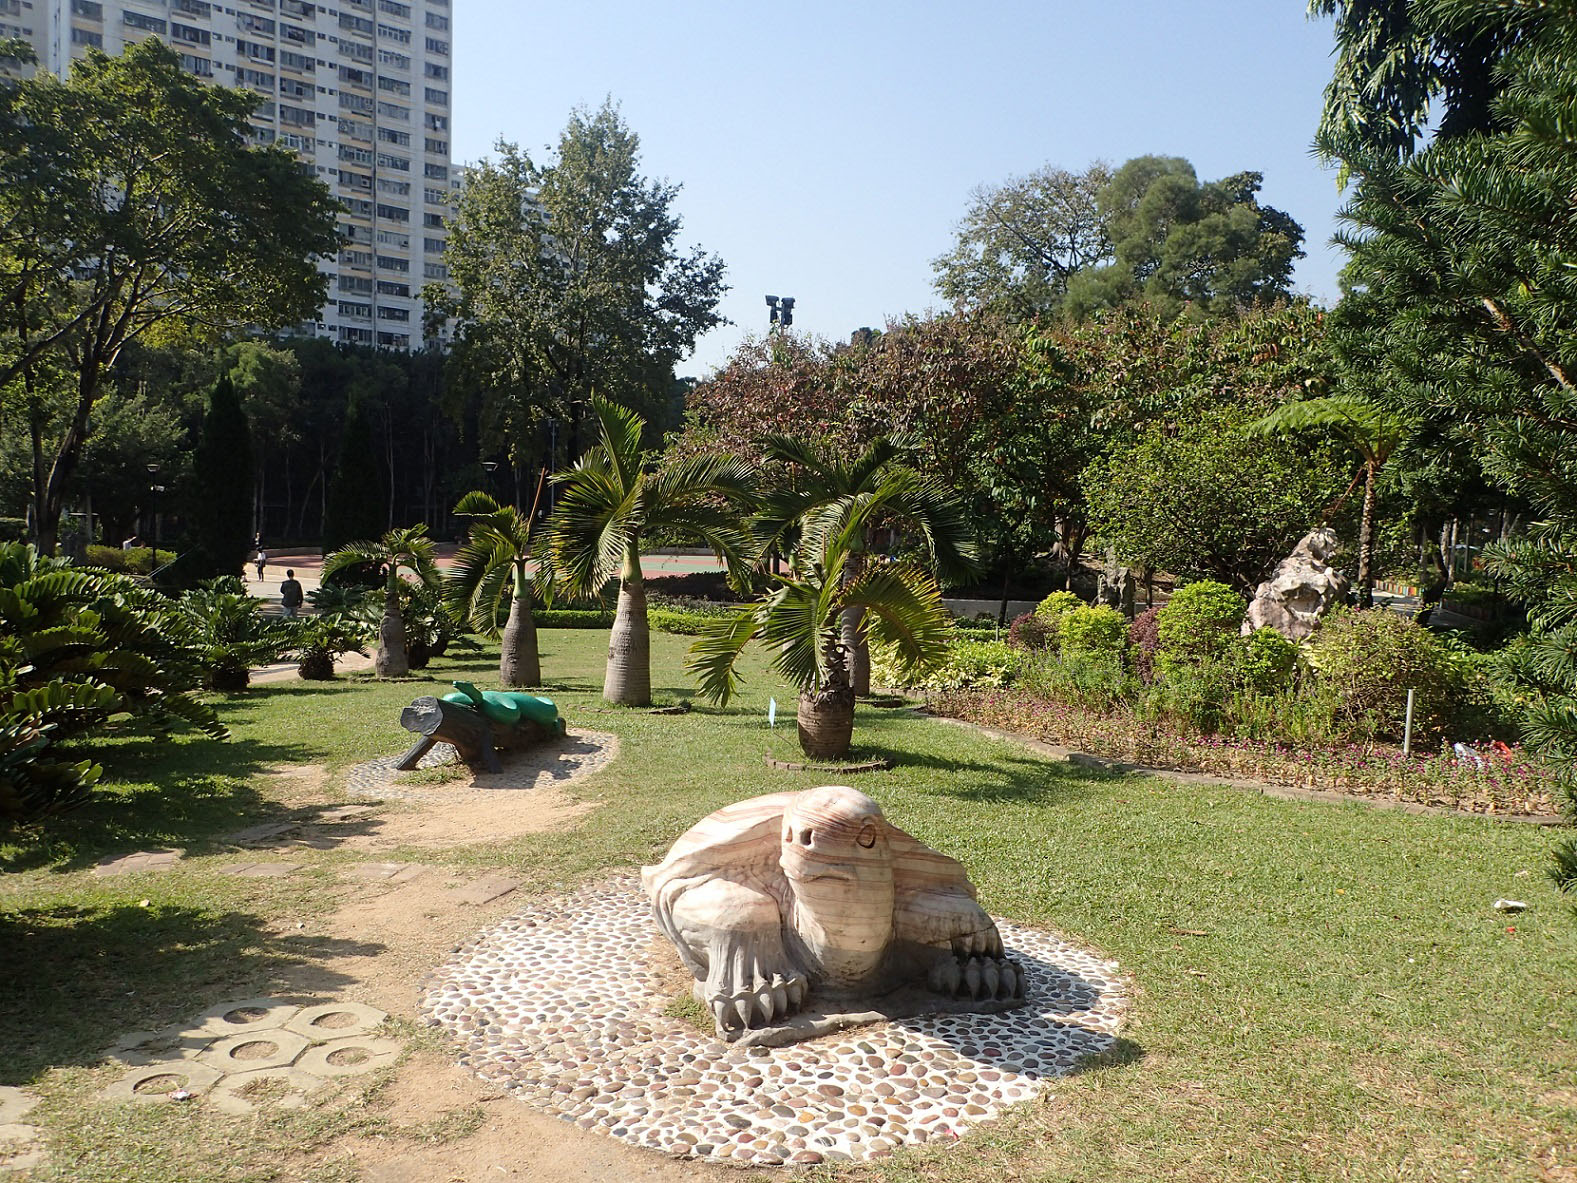 Photo 3: Tuen Mun Park